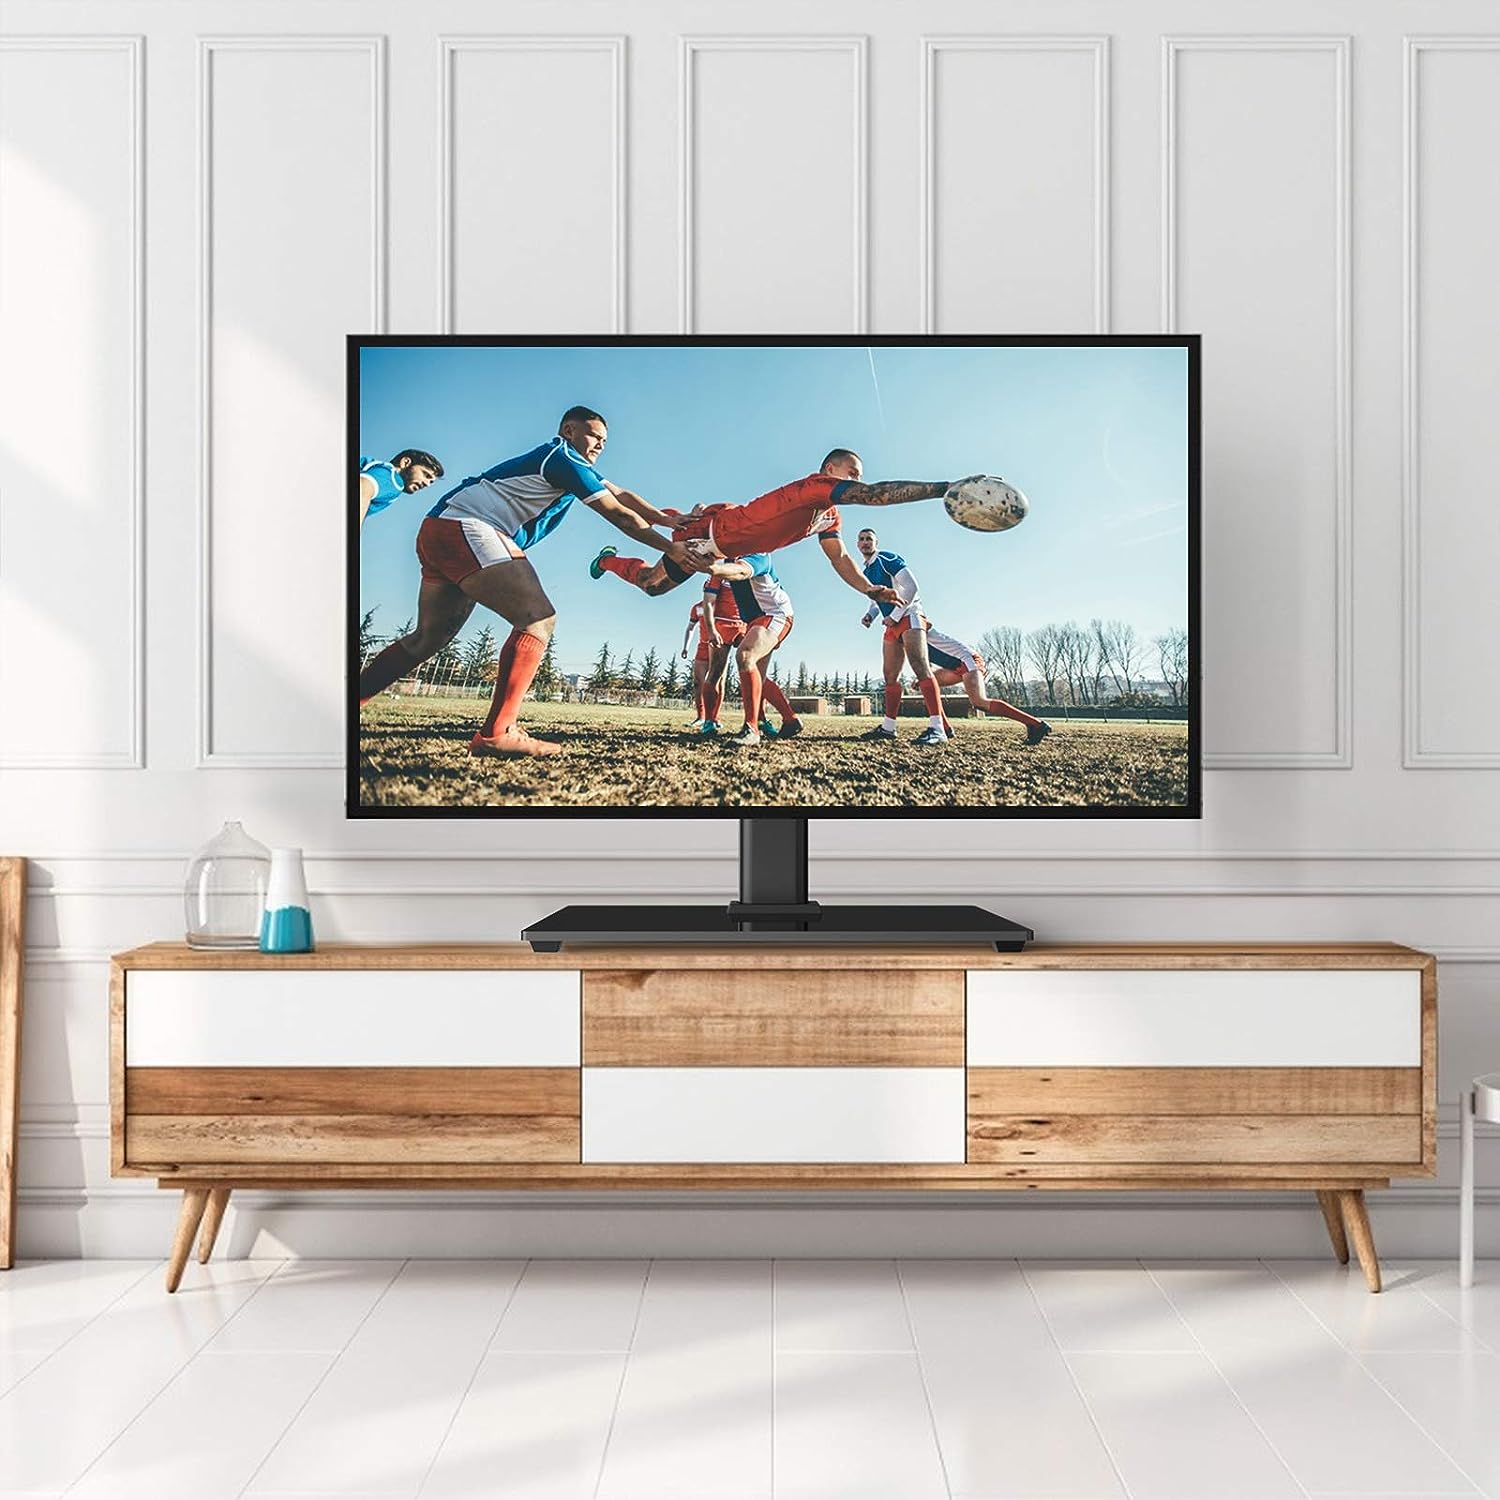 Soporte universal para TV - Soporte de mesa para televisores LED LCD de 32  a 47 pulgadas con base de TV de vidrio templado con altura ajustable y